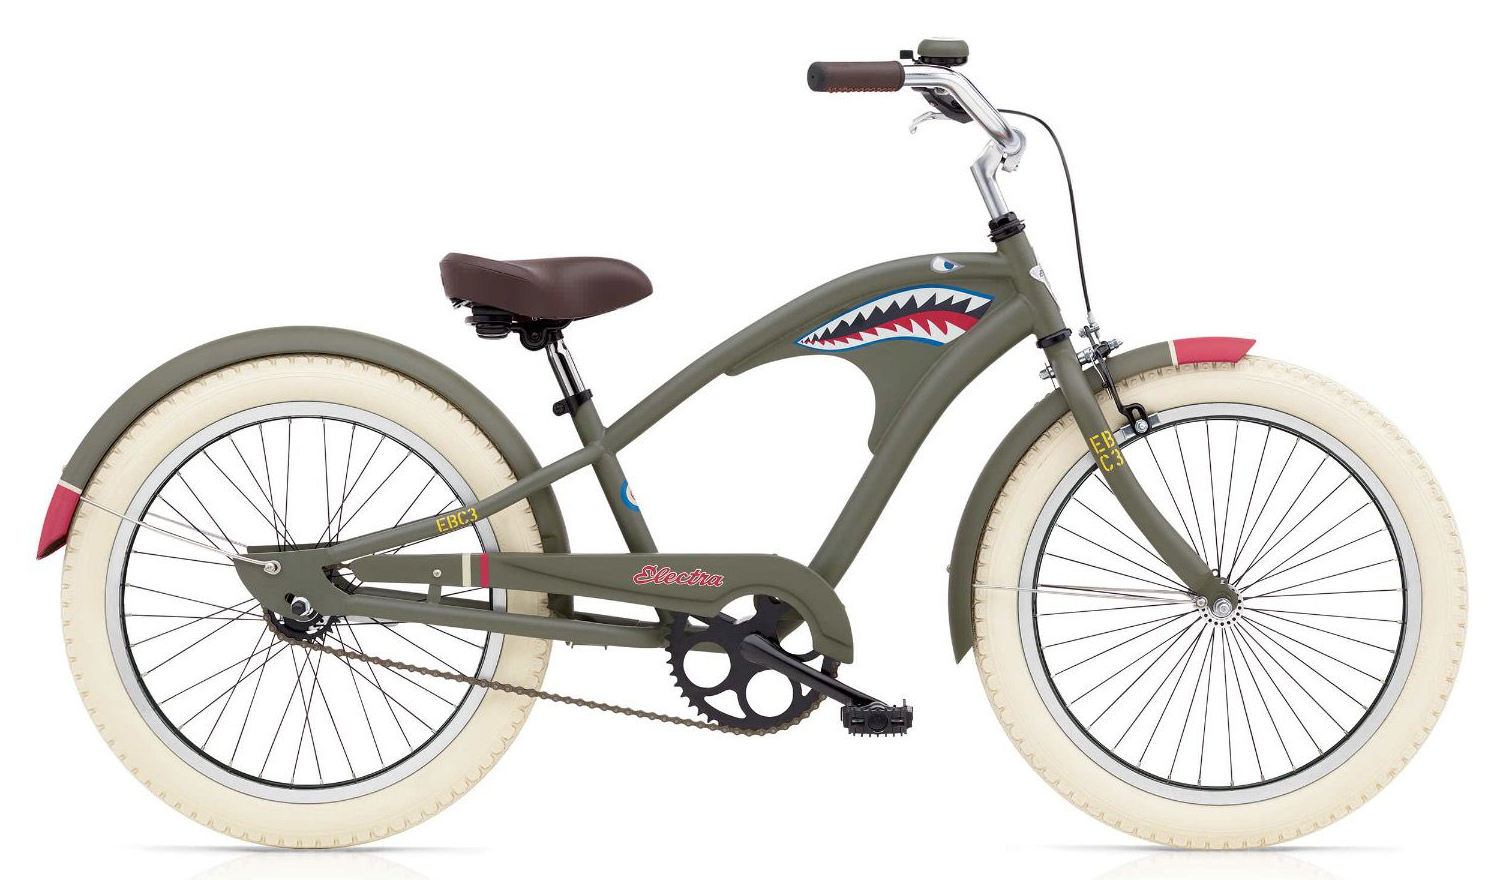  Отзывы о Детском велосипеде Electra Tiger Shark 1 '20 2019